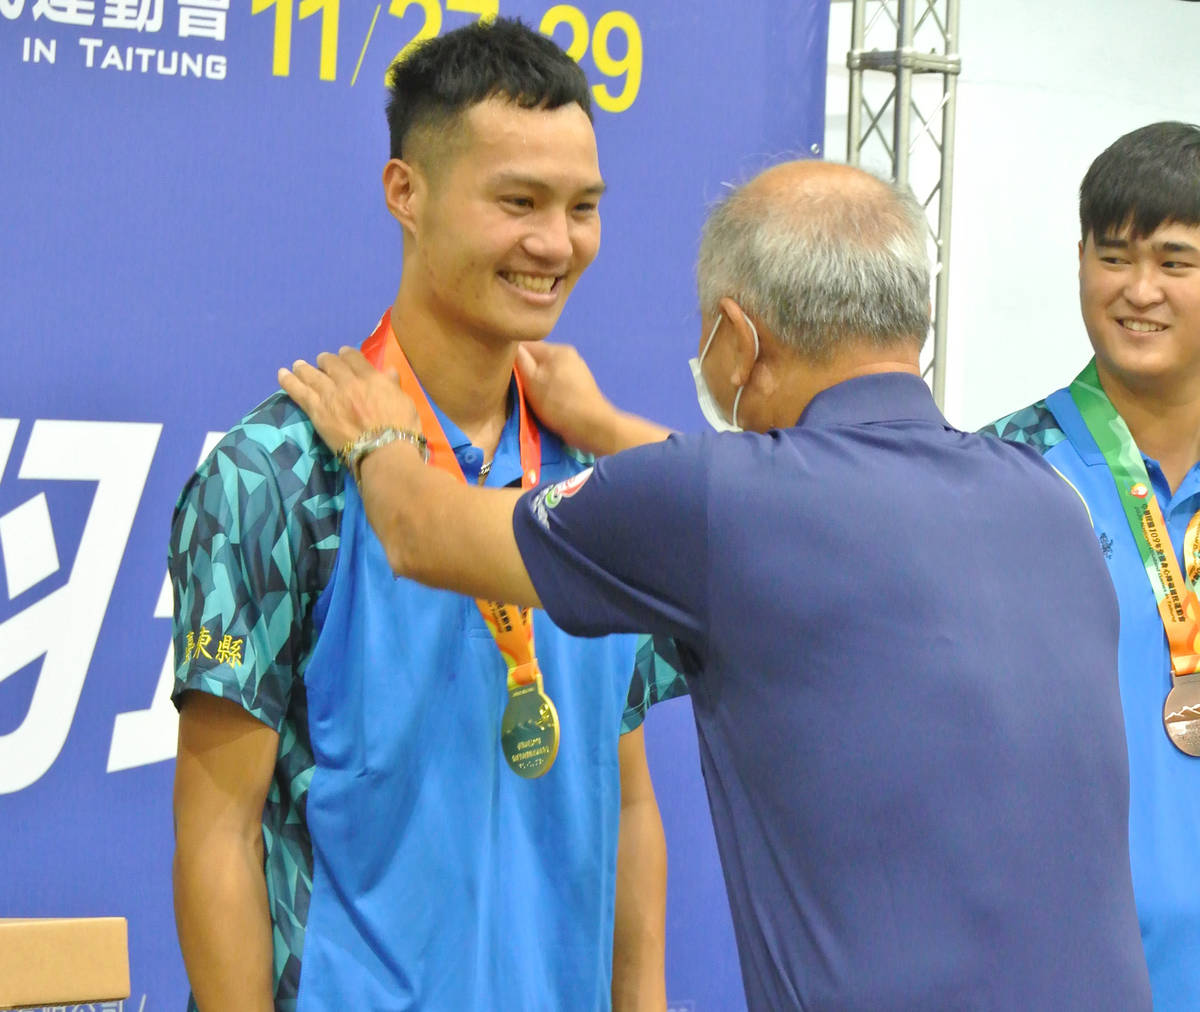 宋瑋在特奧羽球男子組個人單打賽拿下金牌